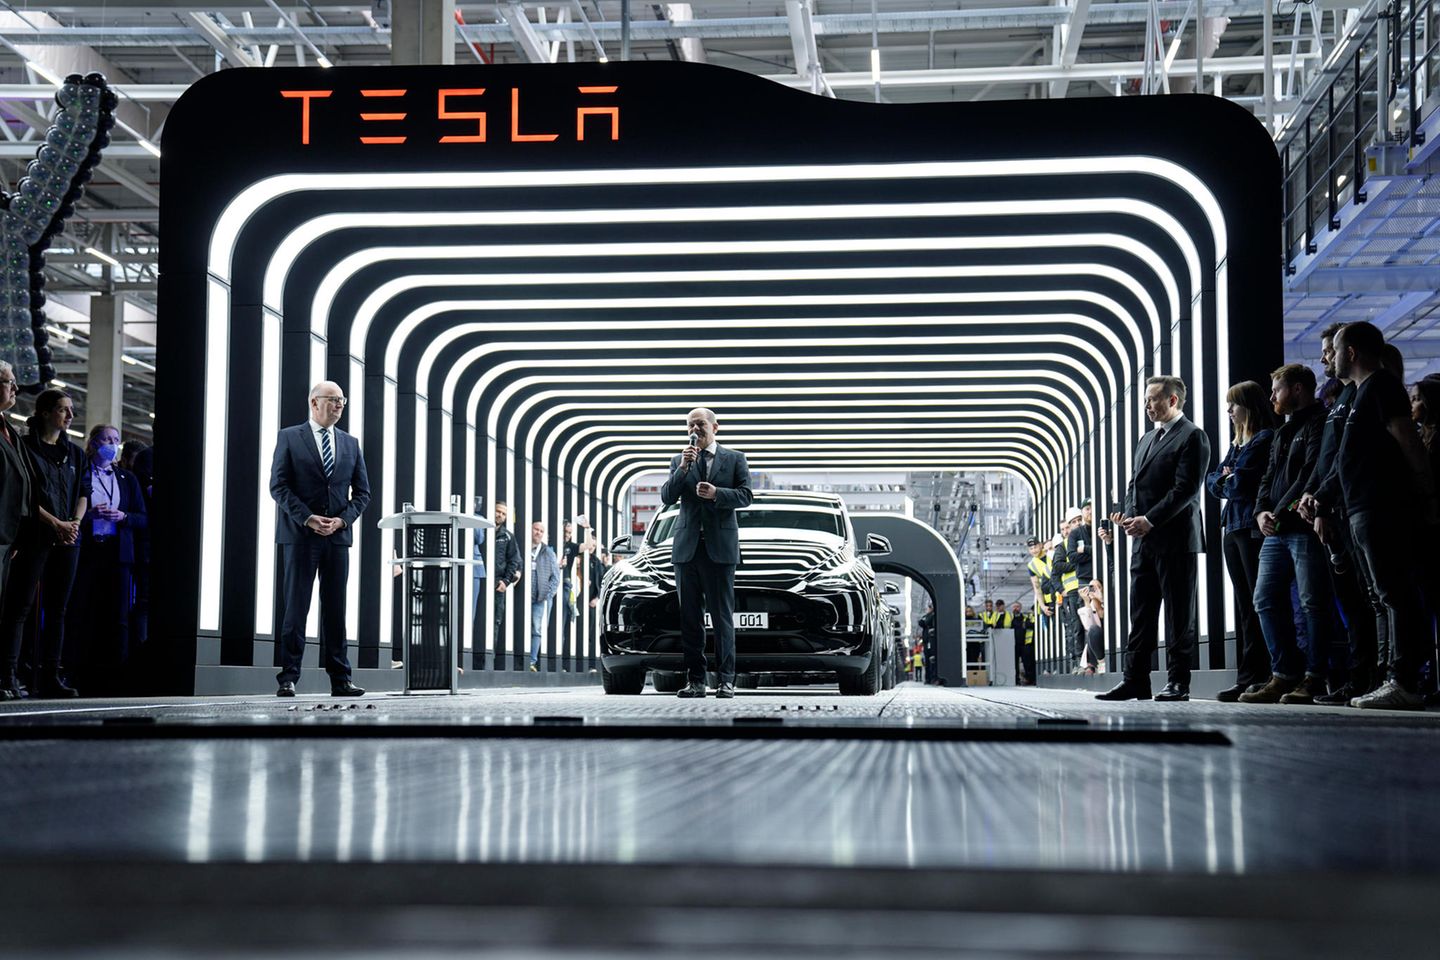 Am 22. März wird die Tesla-Fabrik offiziell eröffnet. Neben Tesla-Chef Elon Musk kamen Bundeskanzler Olaf Scholz, Wirtschaftsminister Robert Habeck und der Ministerpräsident Woidke zu der Feier. Die ersten 30 Autos wurden an Kunden übergeben.